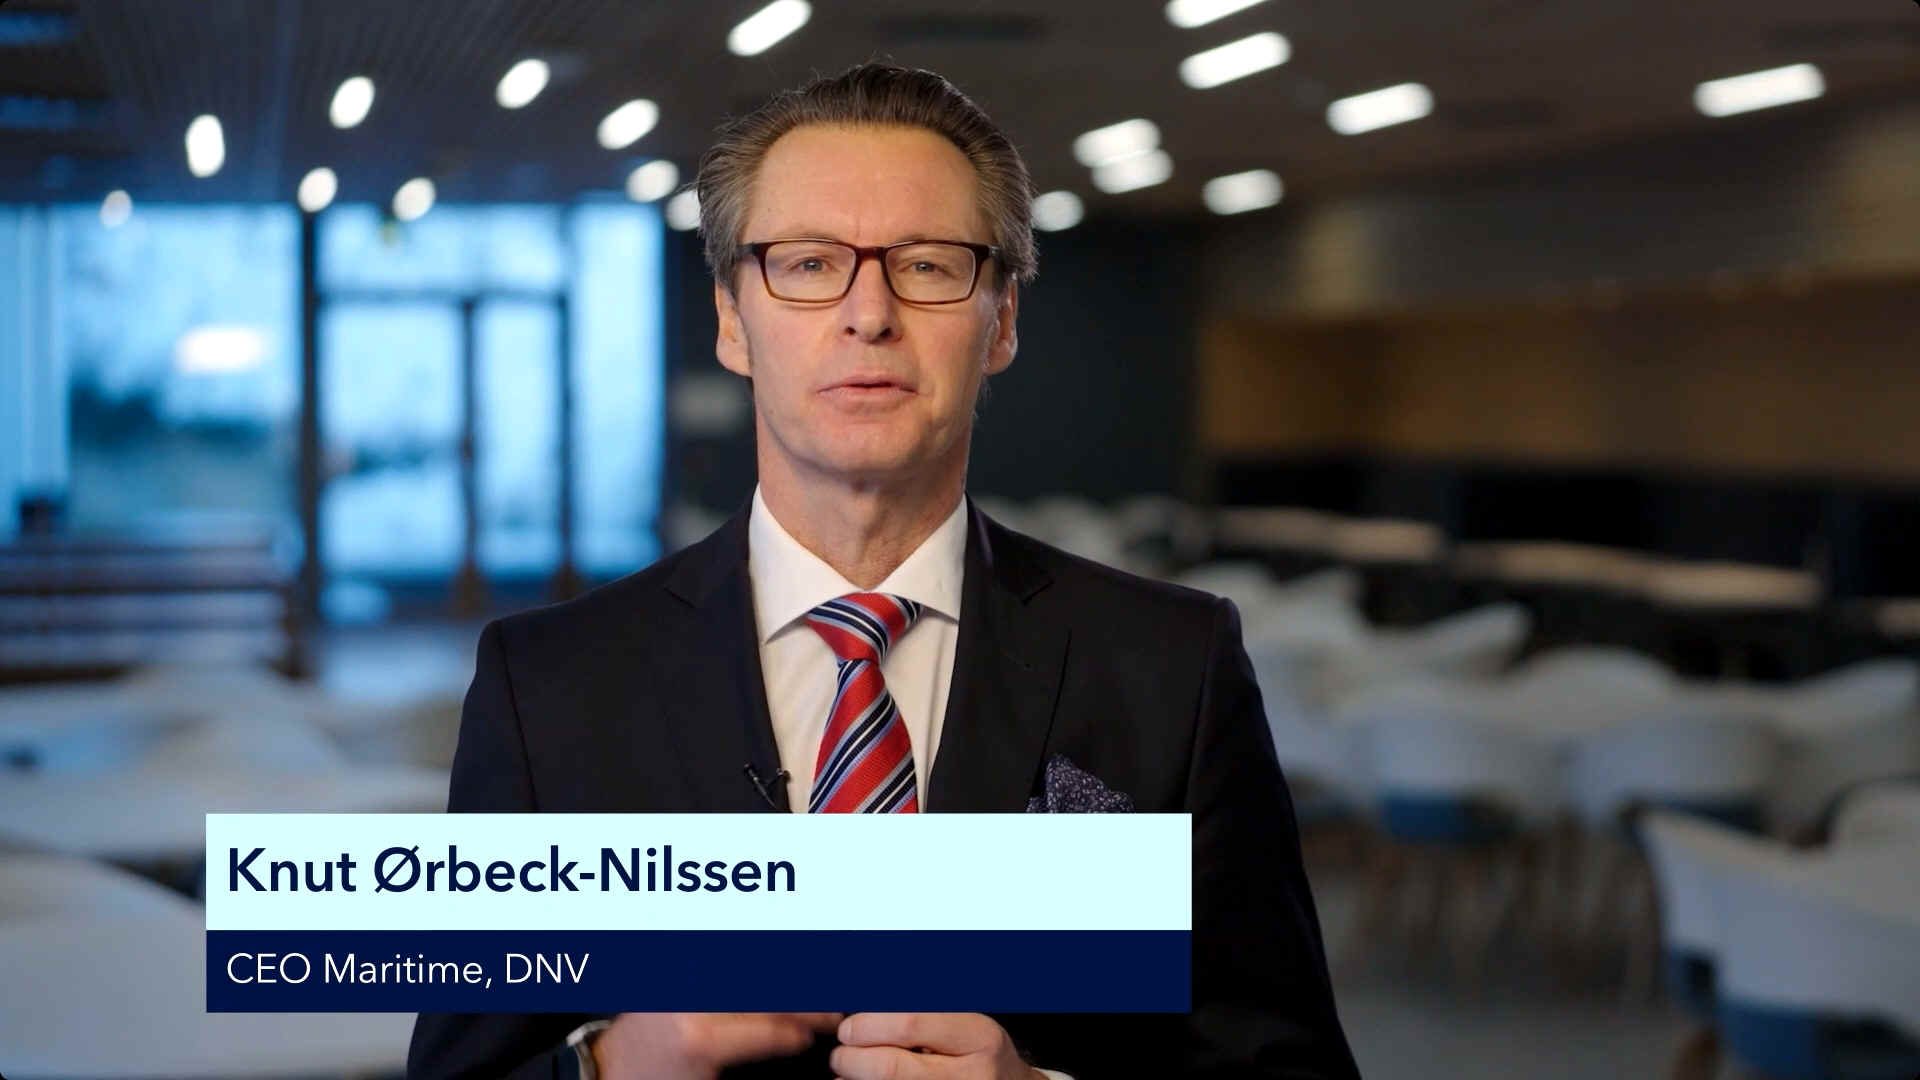 Knut rbeck-Nilssen - CEO Maritime, DNV